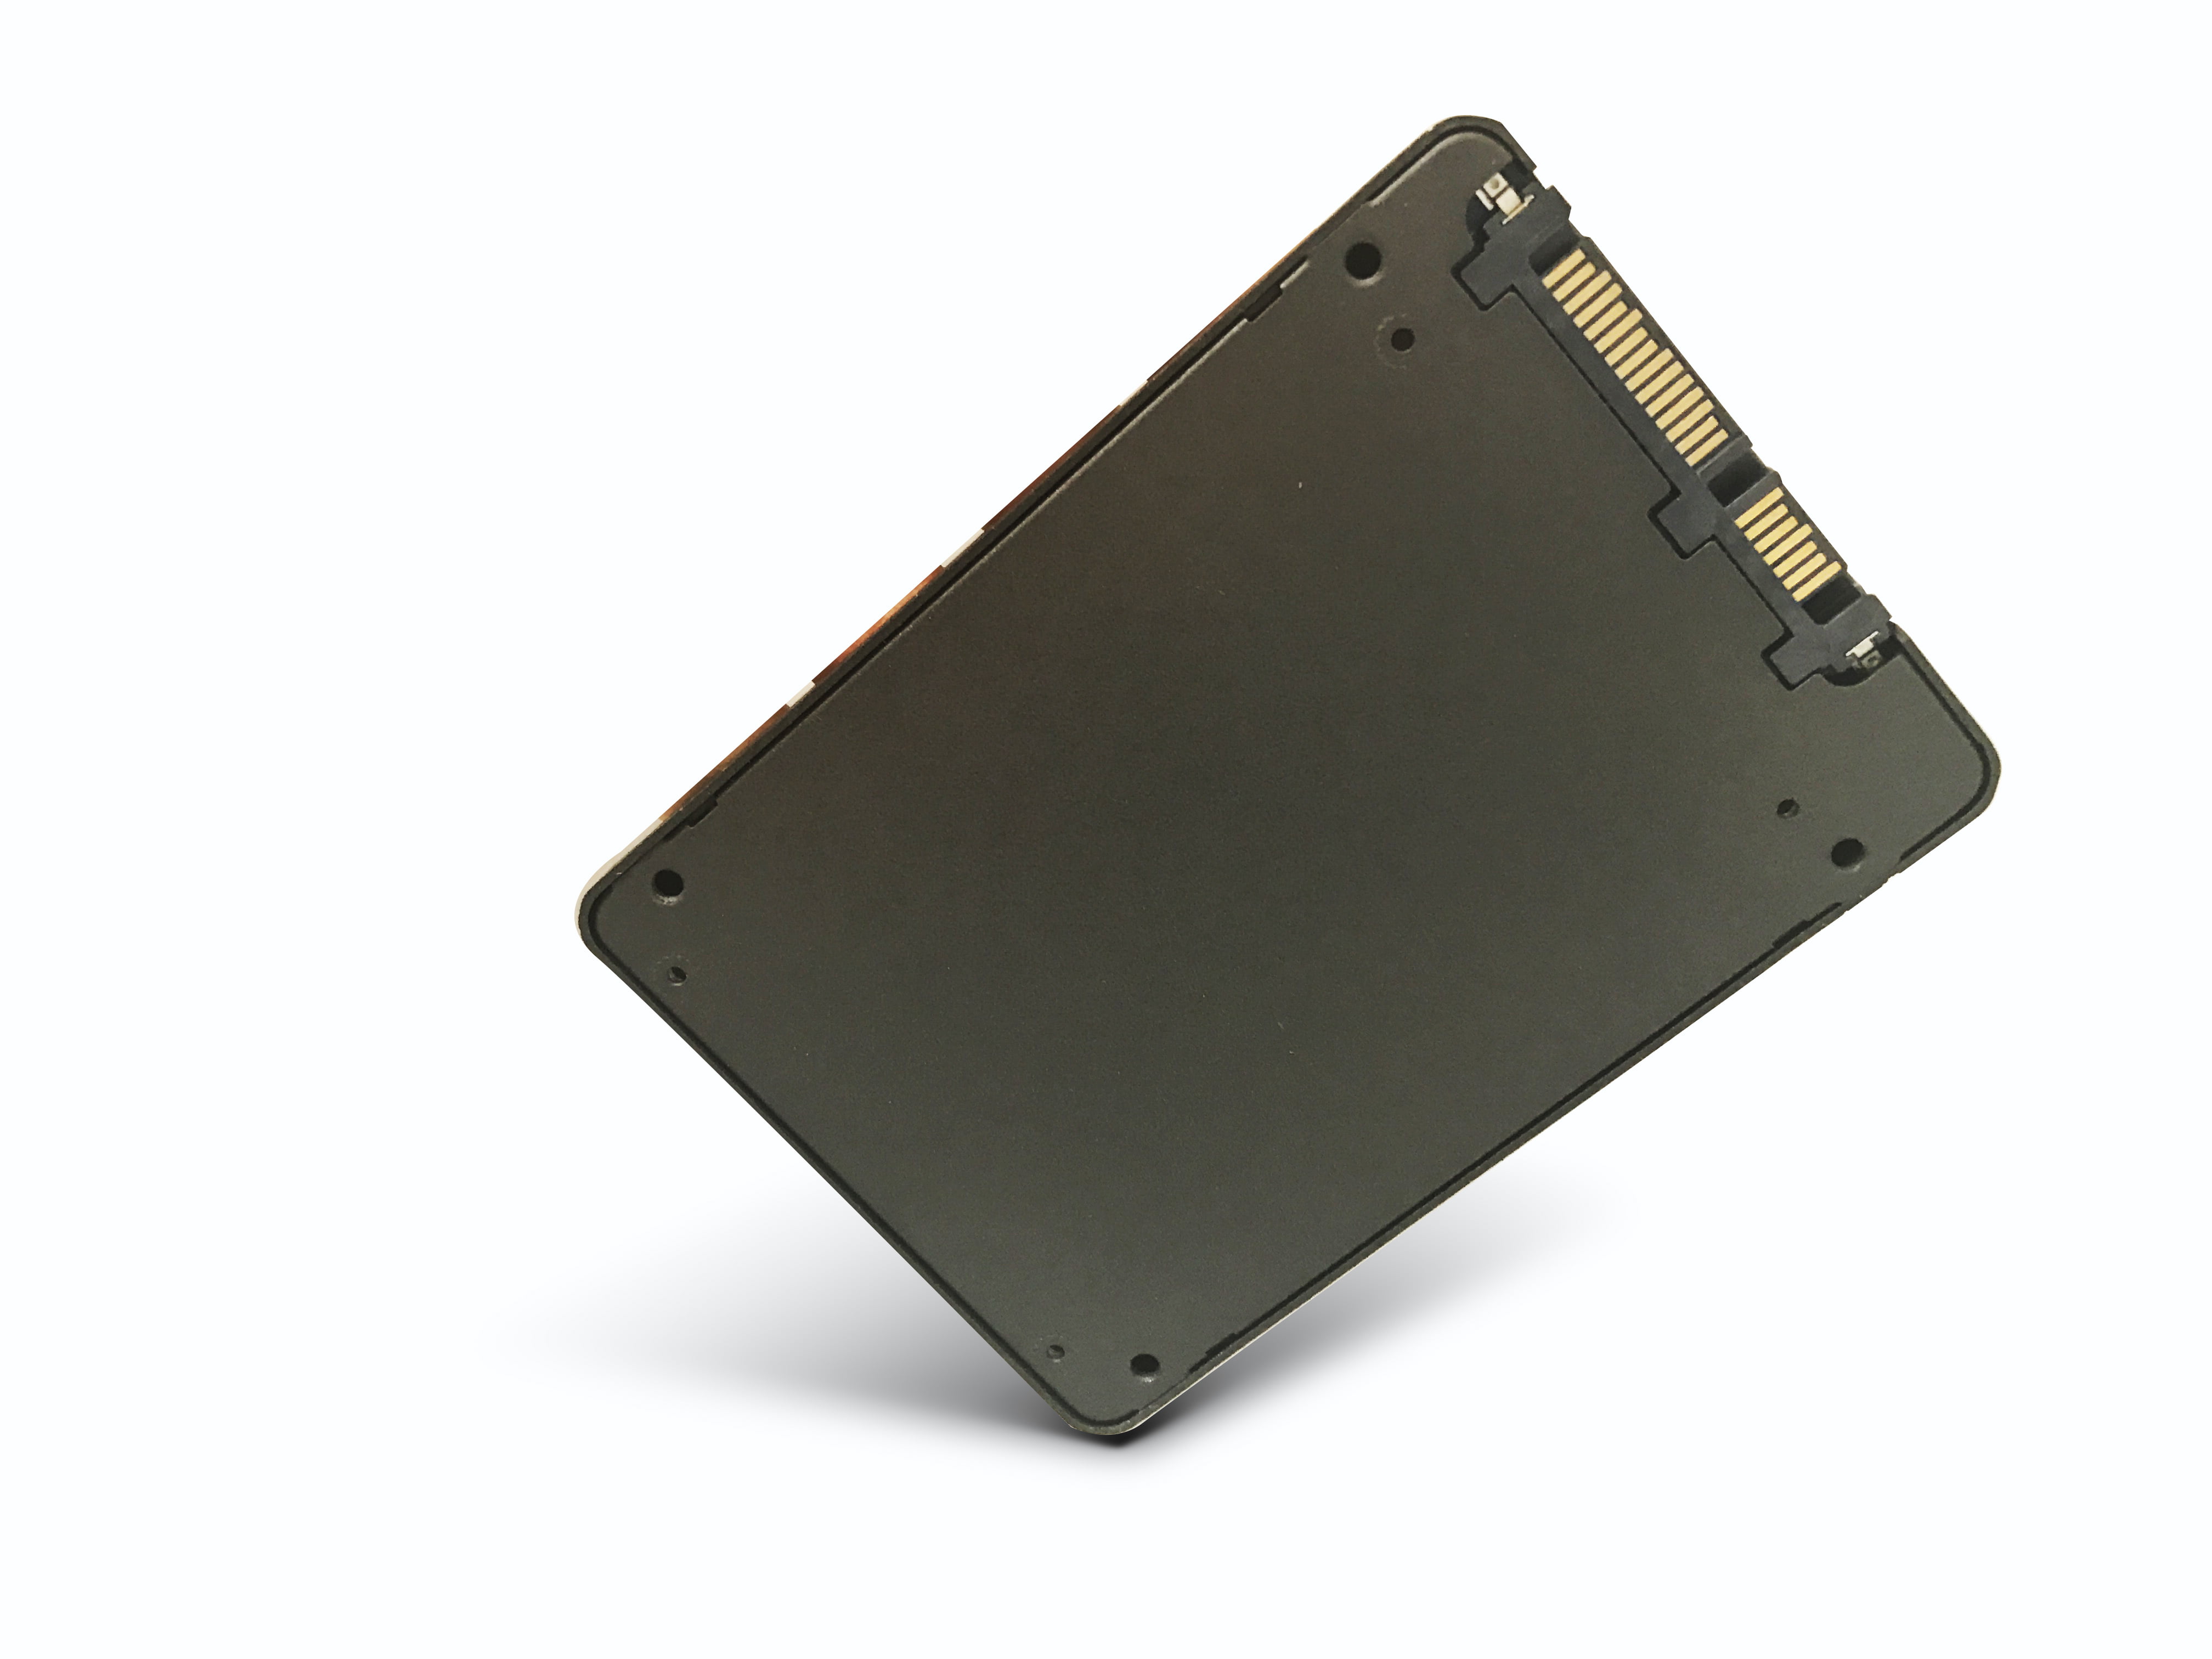 Hyundai 512GB Internal SSD 2.5 SATA III, TLC, Read speed 550MB/s